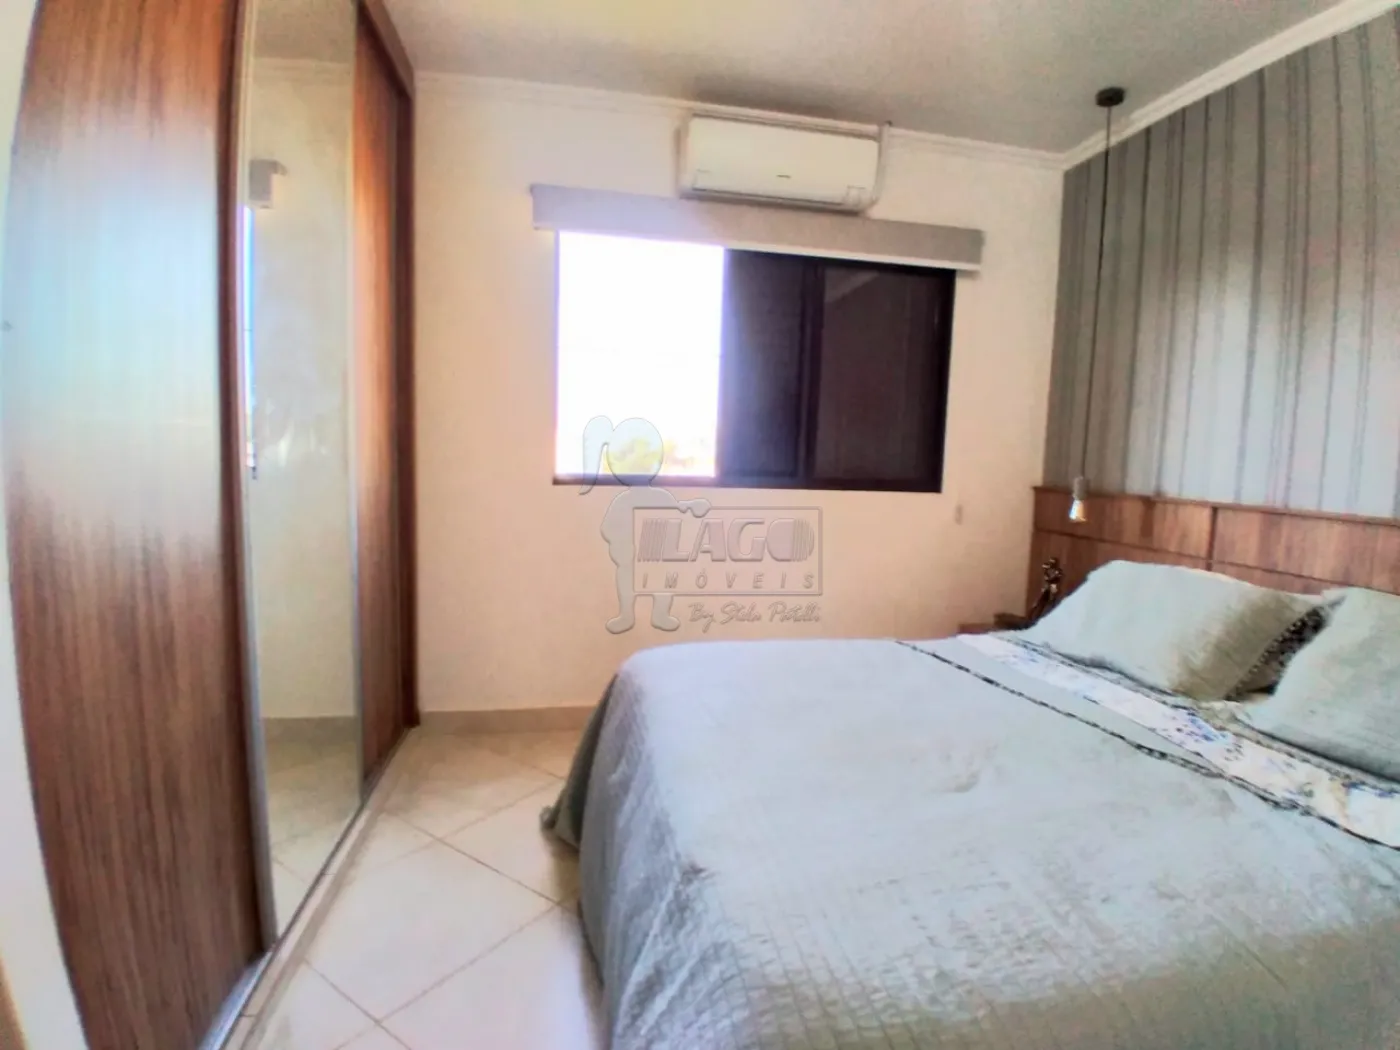 Comprar Apartamento / Padrão em Ribeirão Preto R$ 278.000,00 - Foto 10